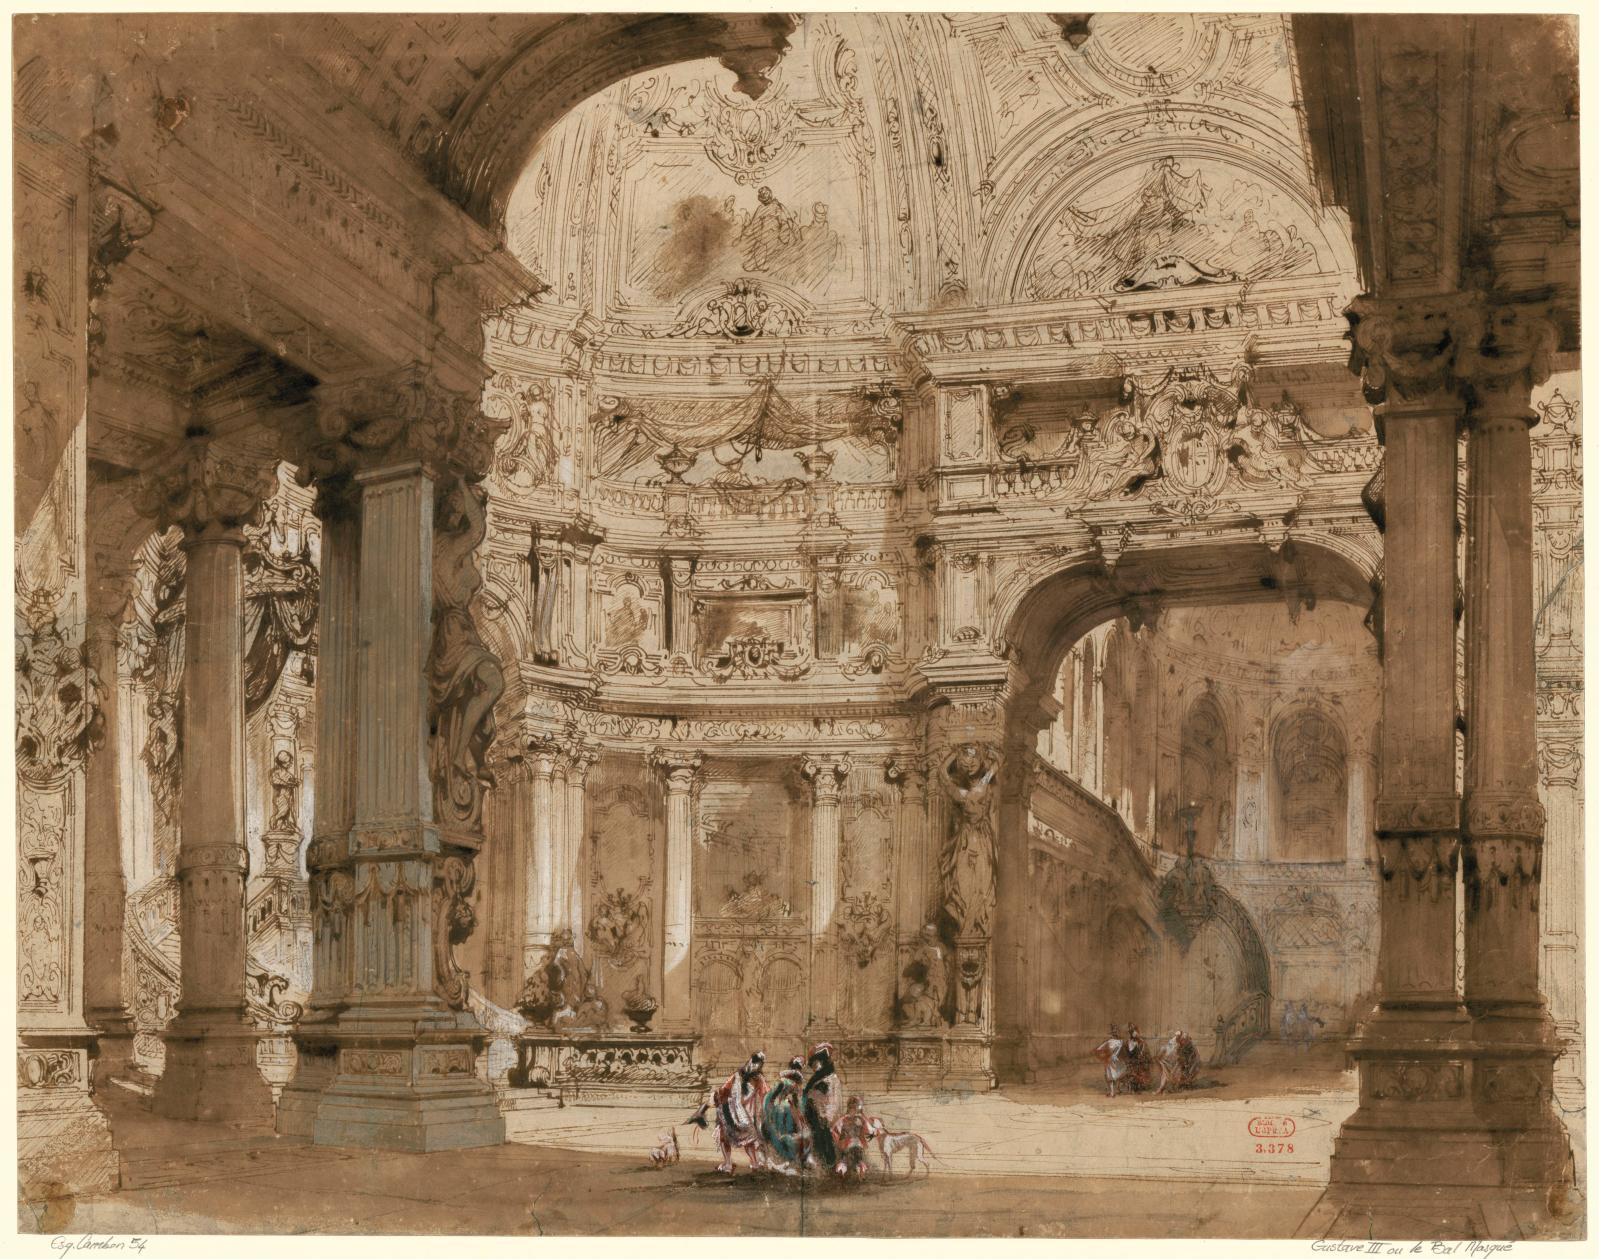 Le grand opéra, 1828-1867. Le spectacle de l’histoire au Palais Garnier